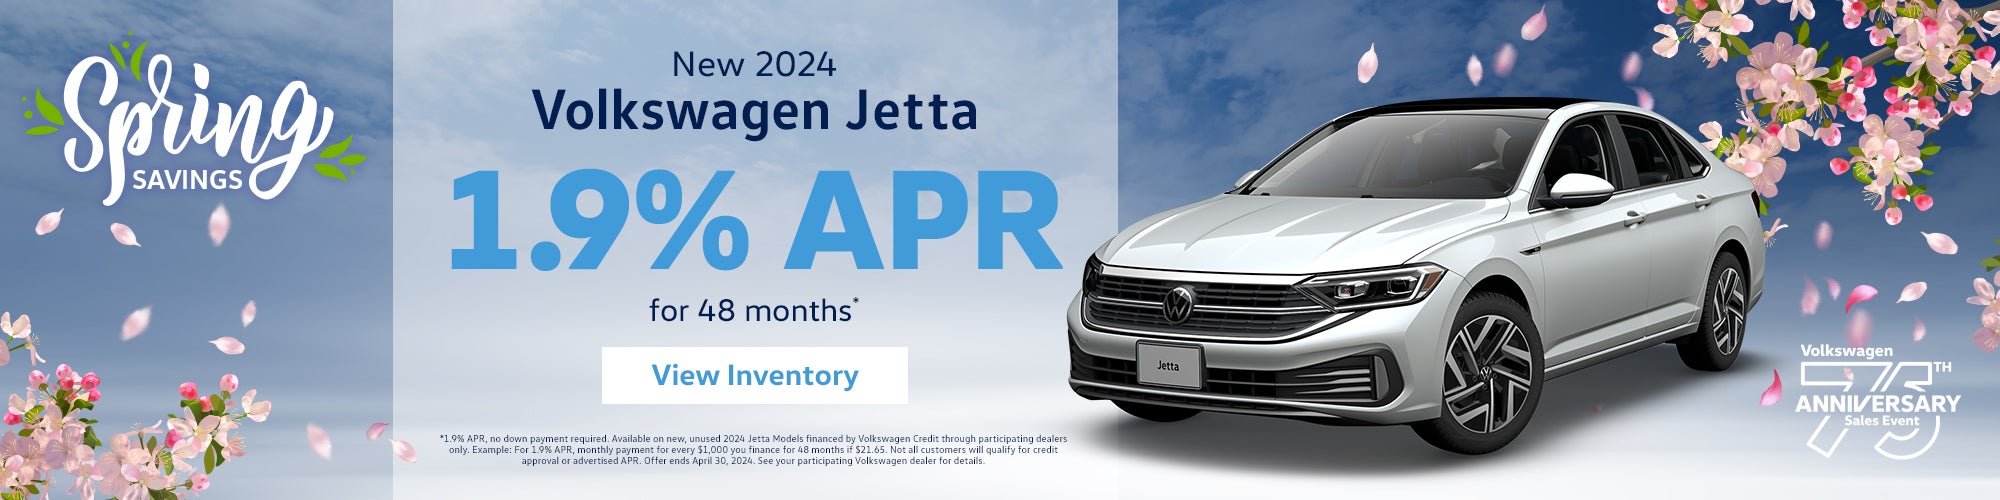 New 2024 Volkswagen Jetta